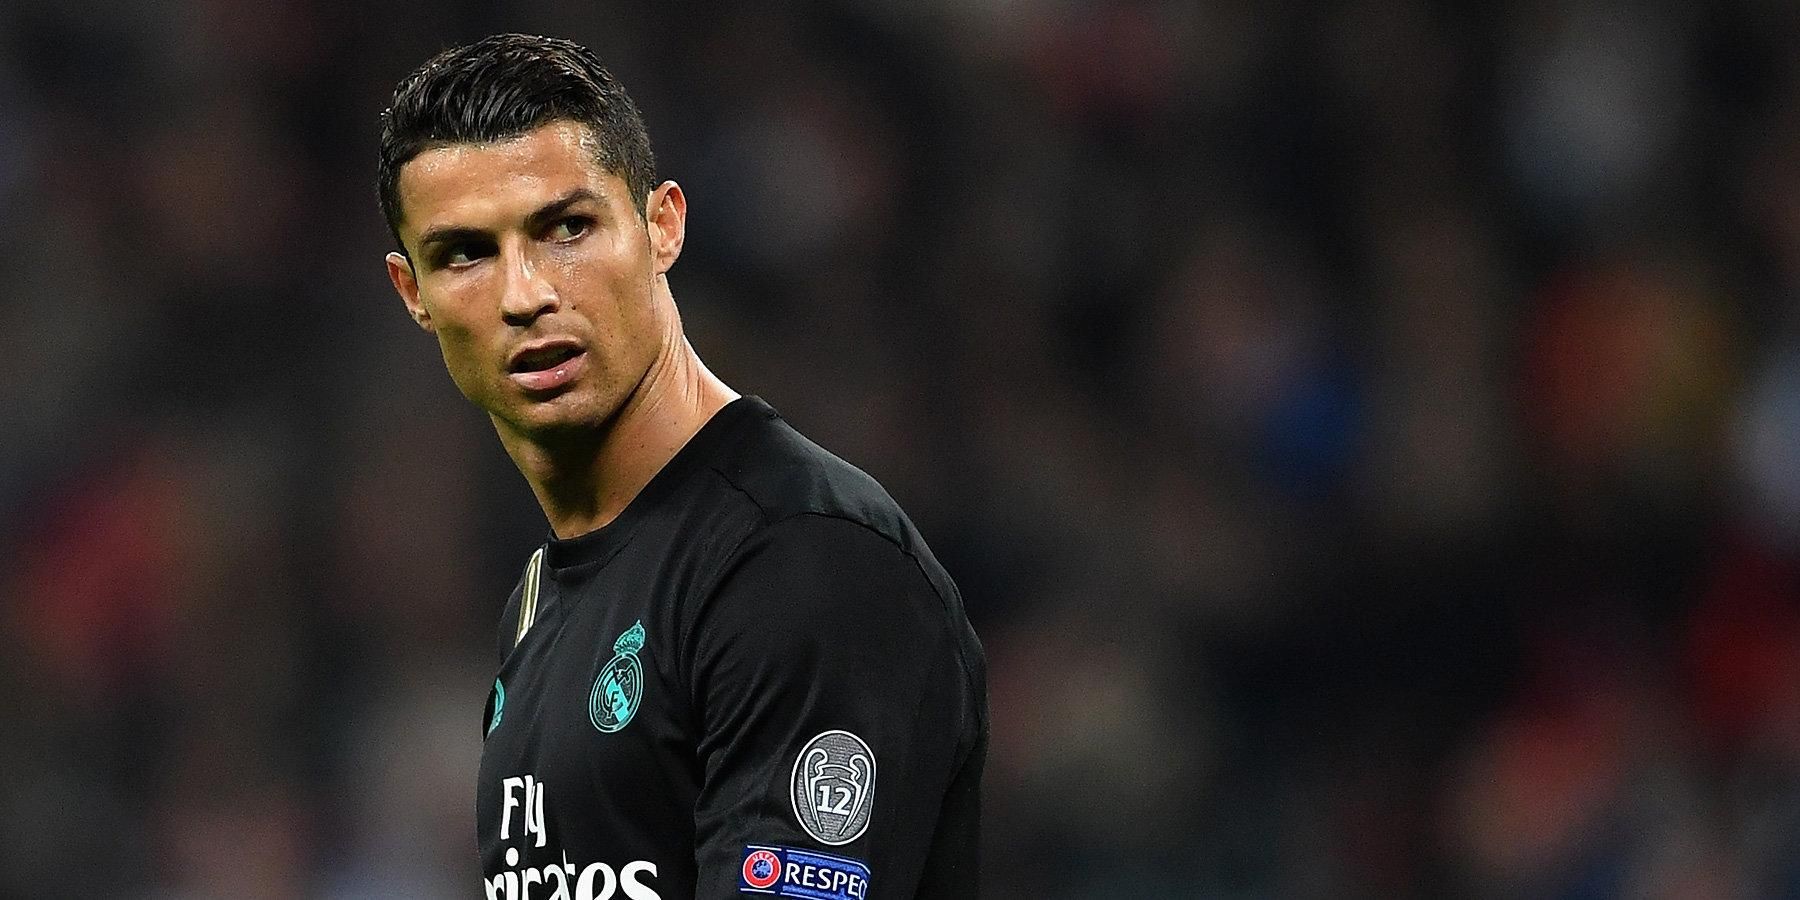 "Реал" принял предложение продать Роналду в "Ювентус" – СМИ